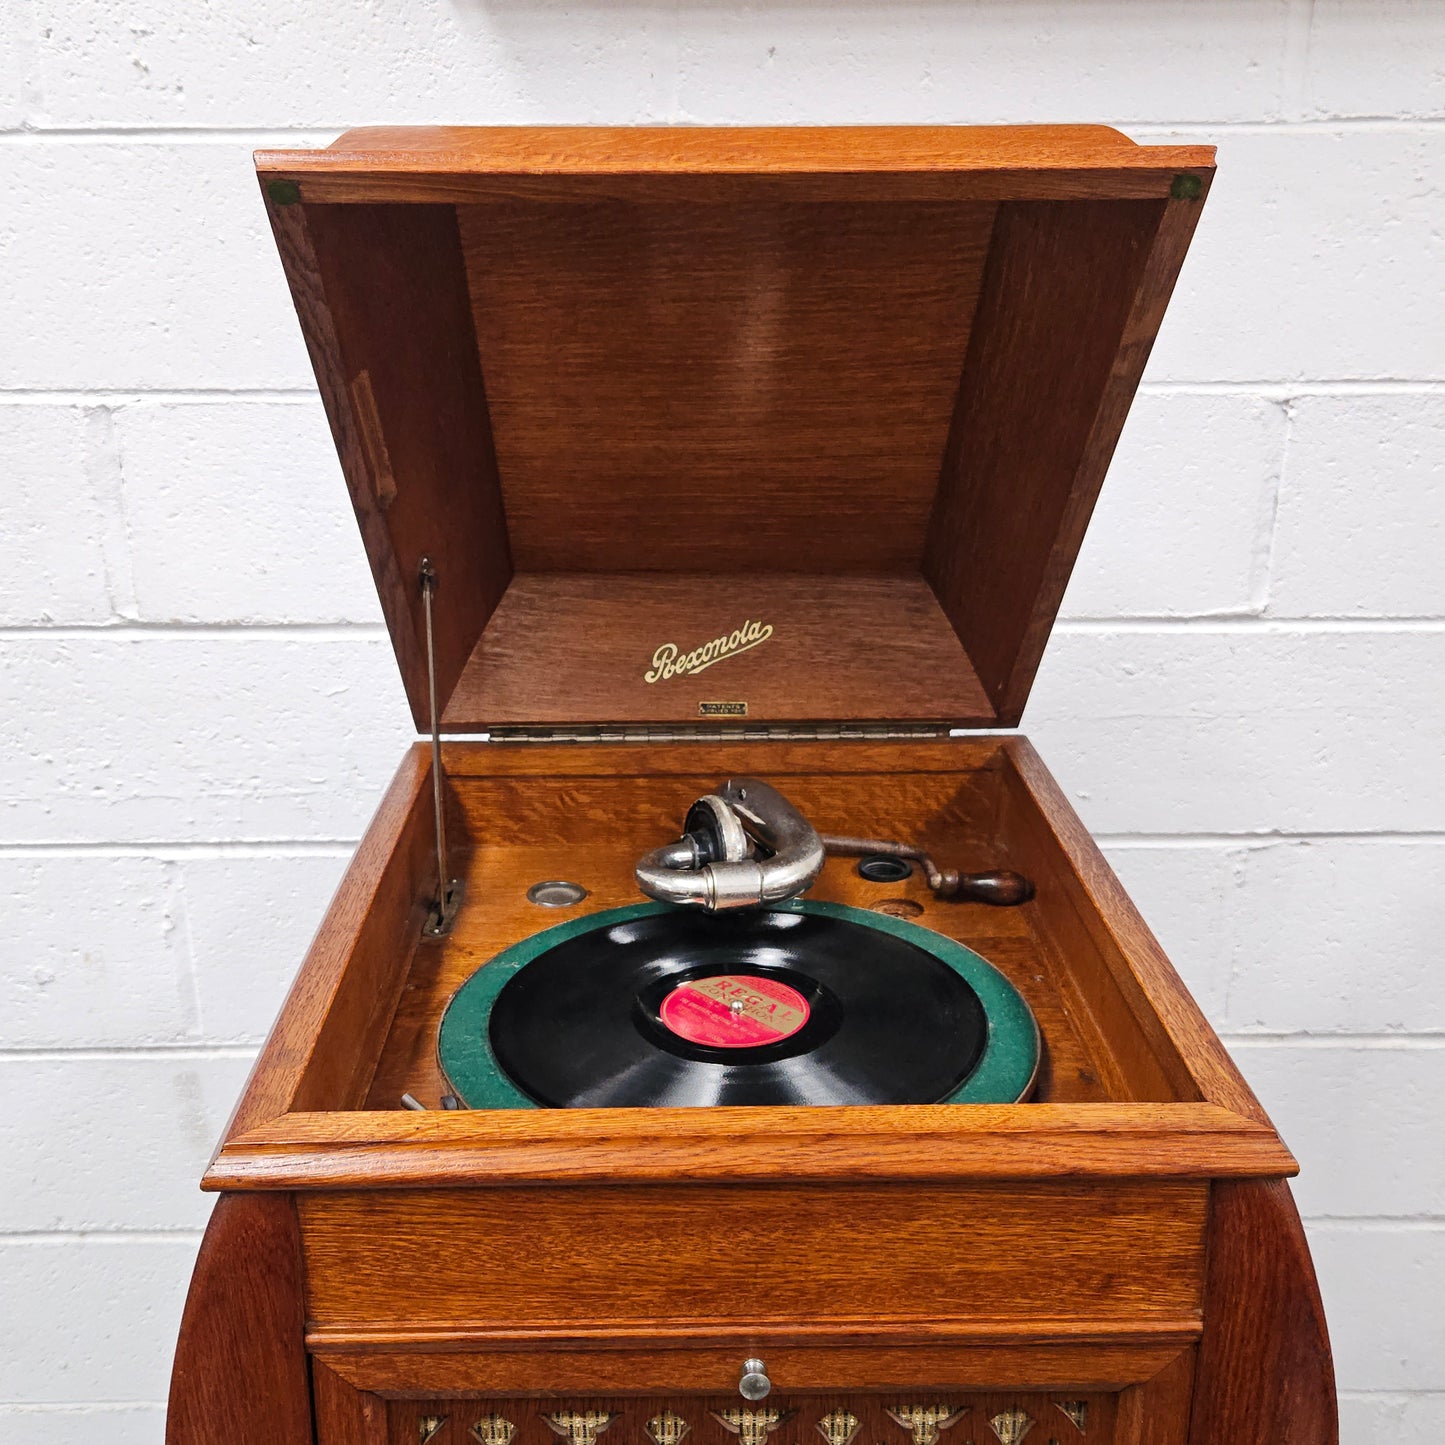 Vintage Oak Cased Gramophone